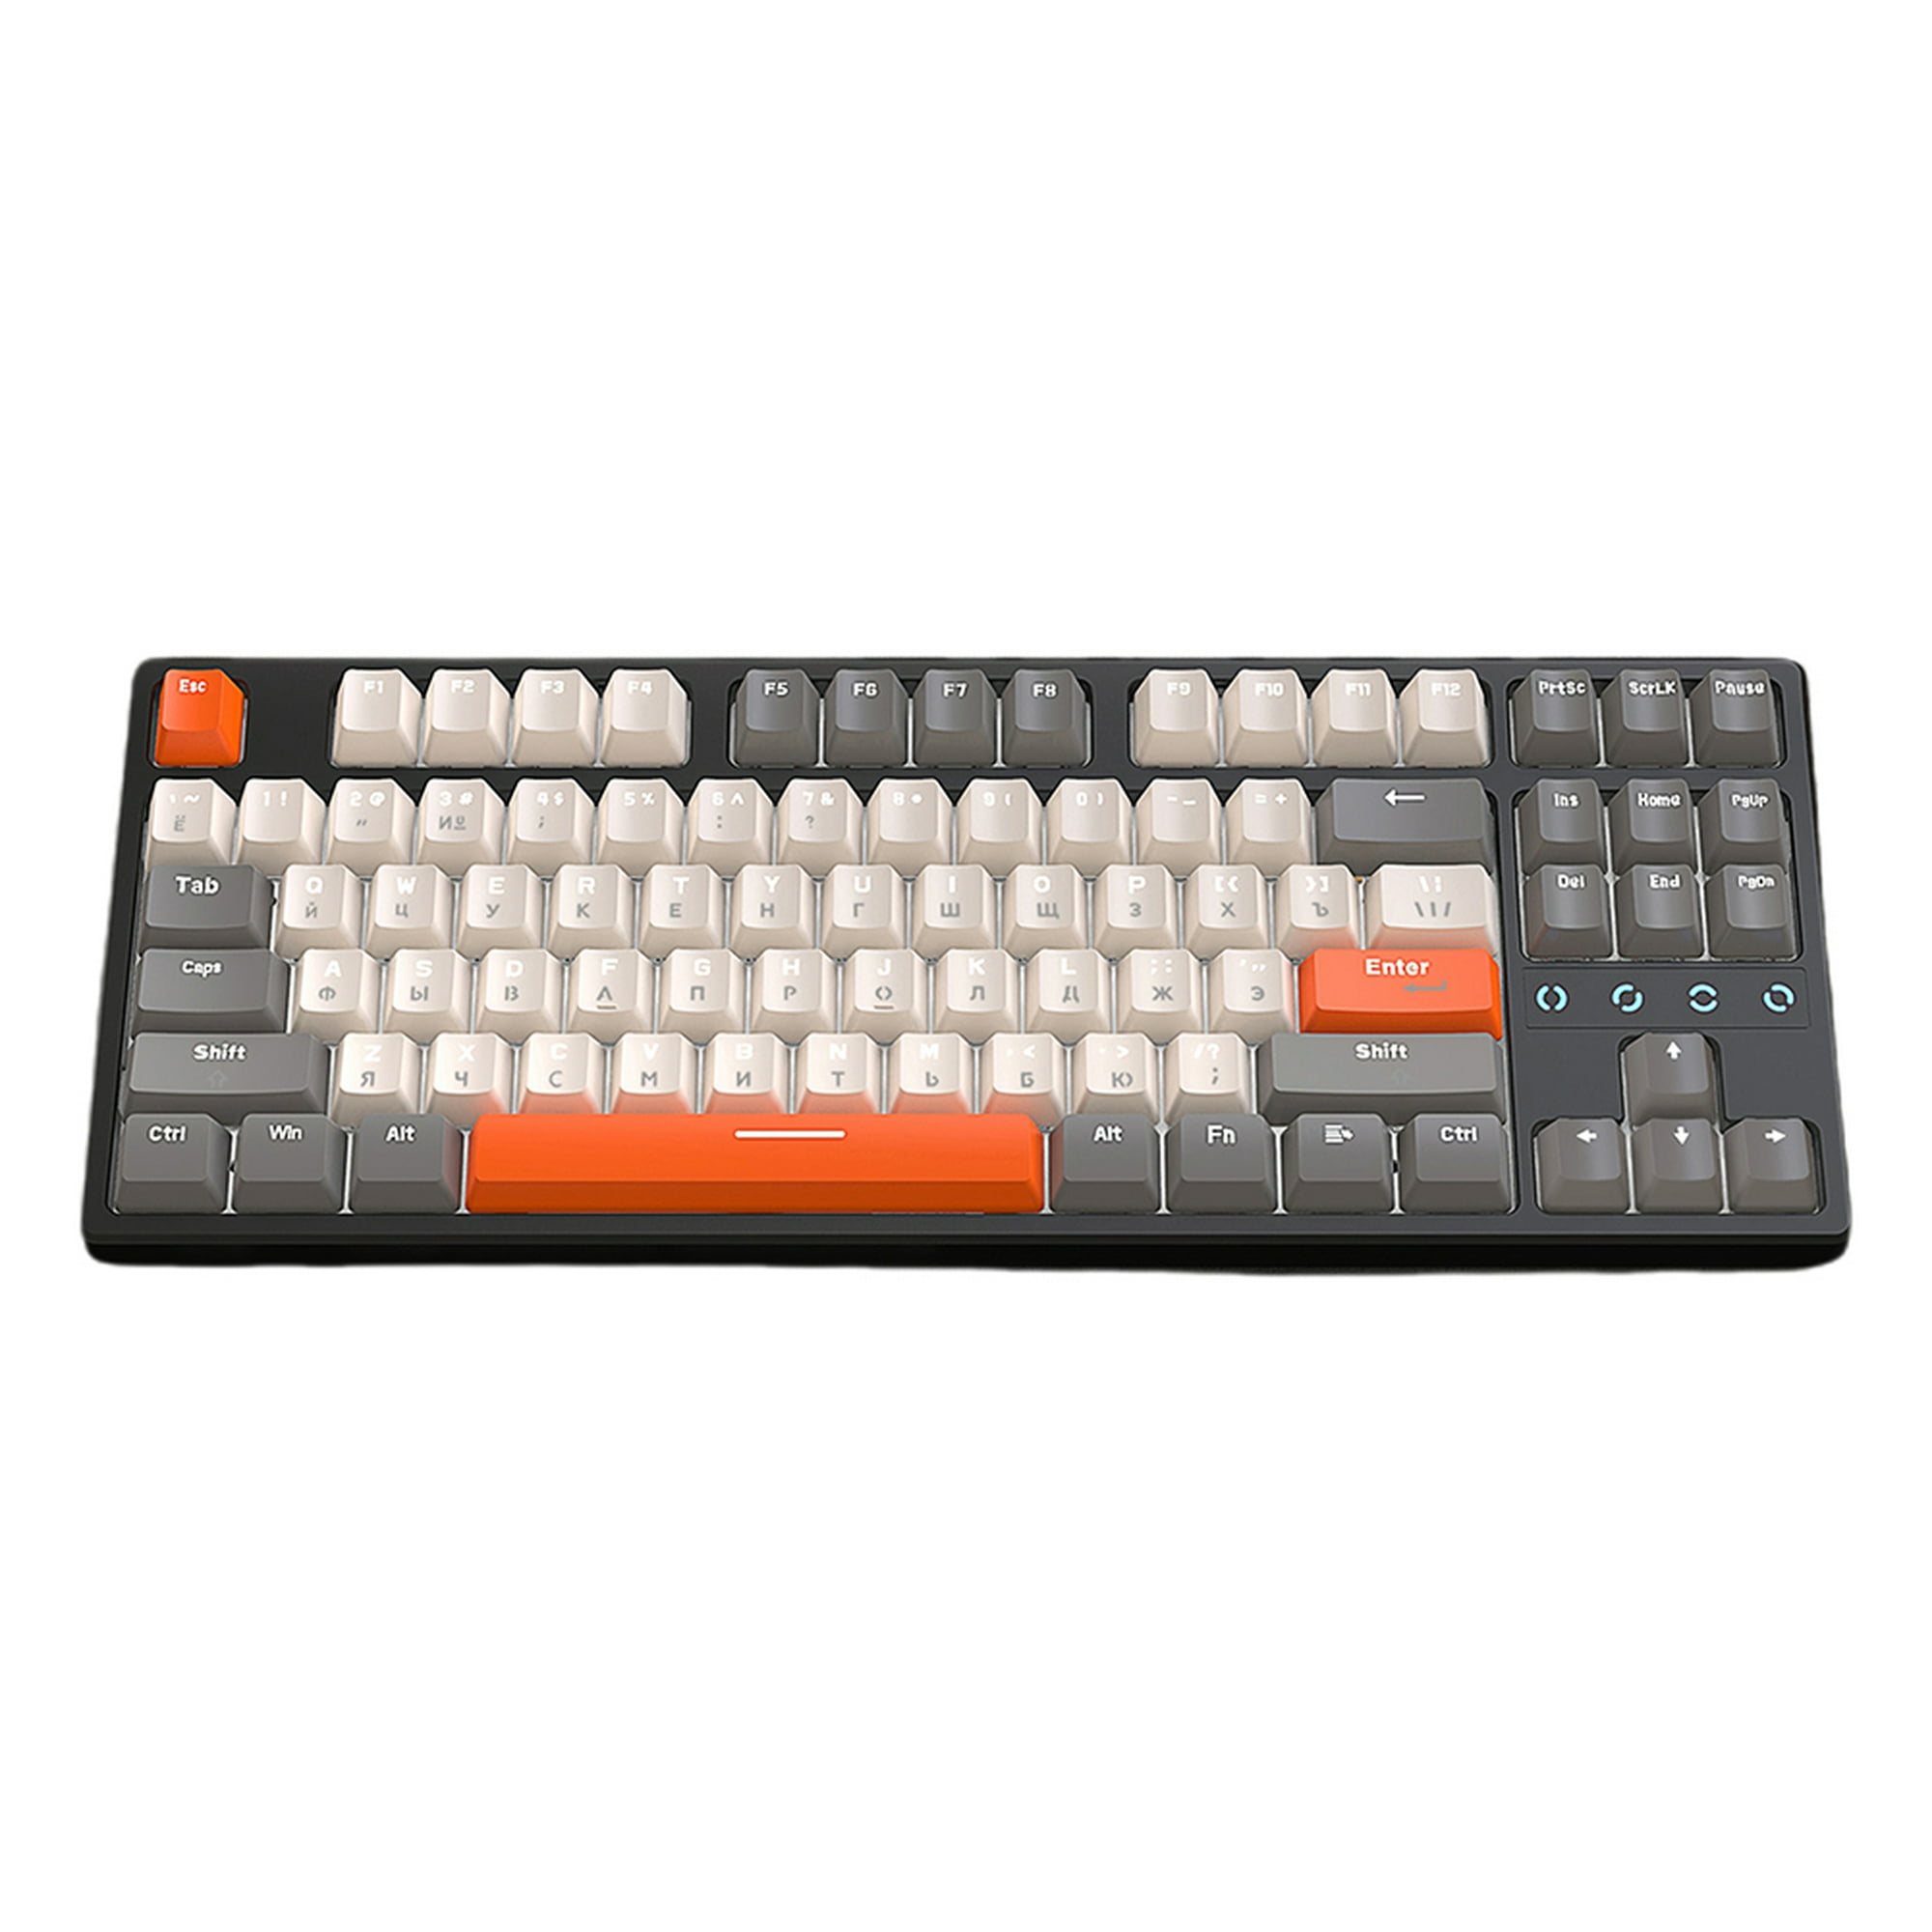 Teclado K87 al 75%, teclado para juegos de 87 teclas, teclado mecánico TKL  intercambiable en caliente, teclado RGB con teclas PBT con tema de planta